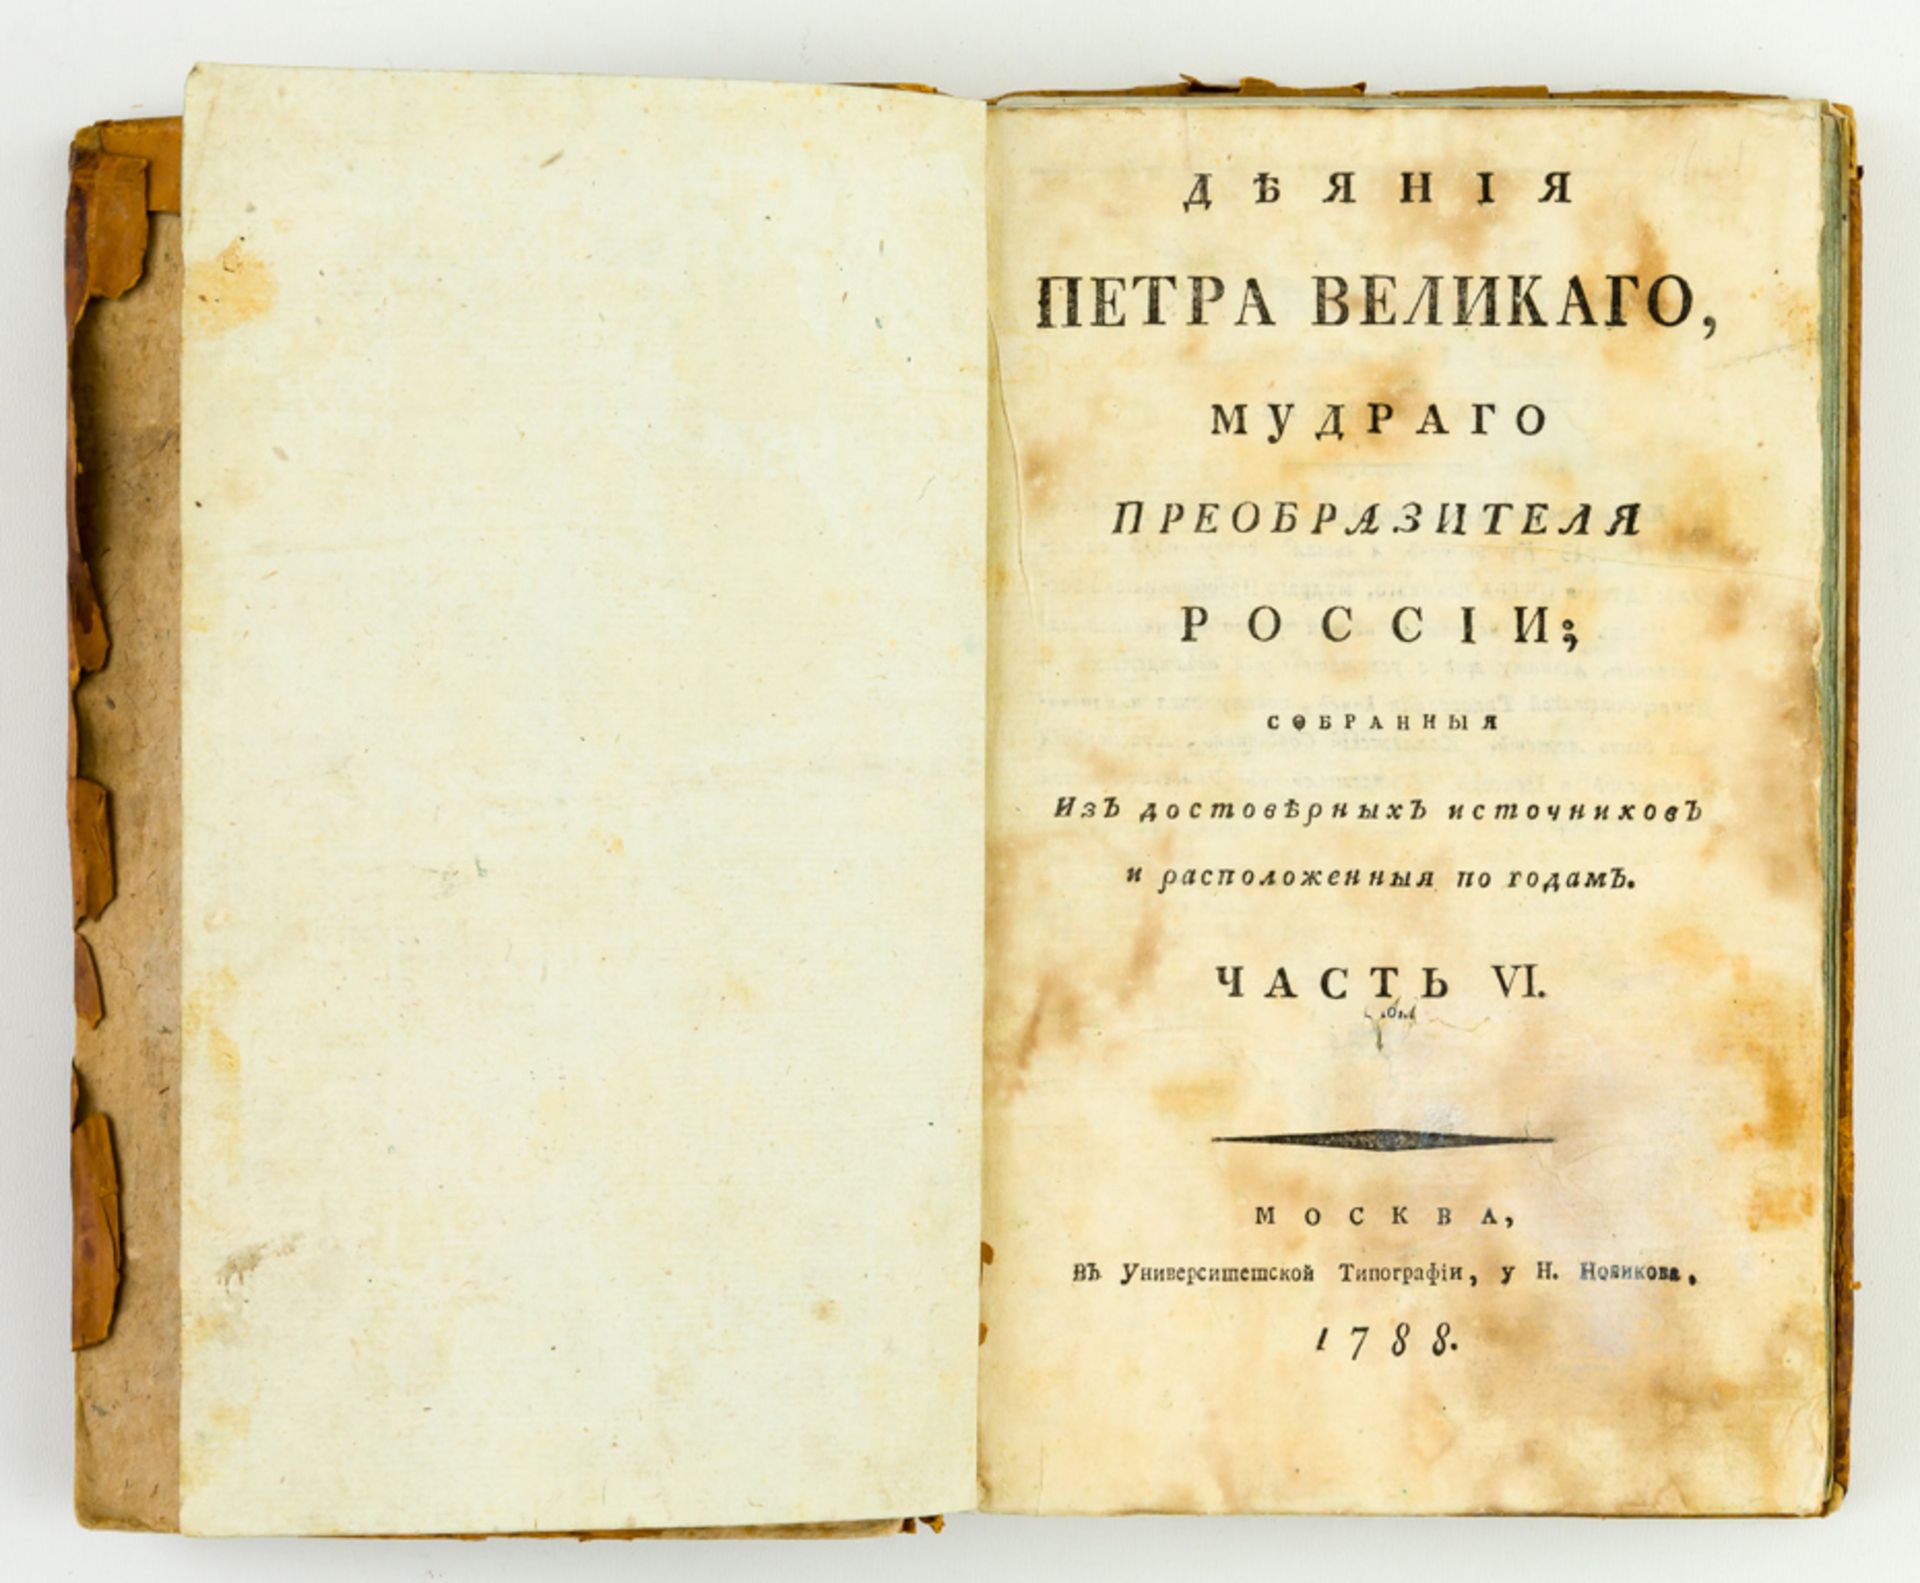 I.I. GOLIKOV: TATEN VON PETER DEM GROSSEN, TEIL VI, MOSKAU 1788